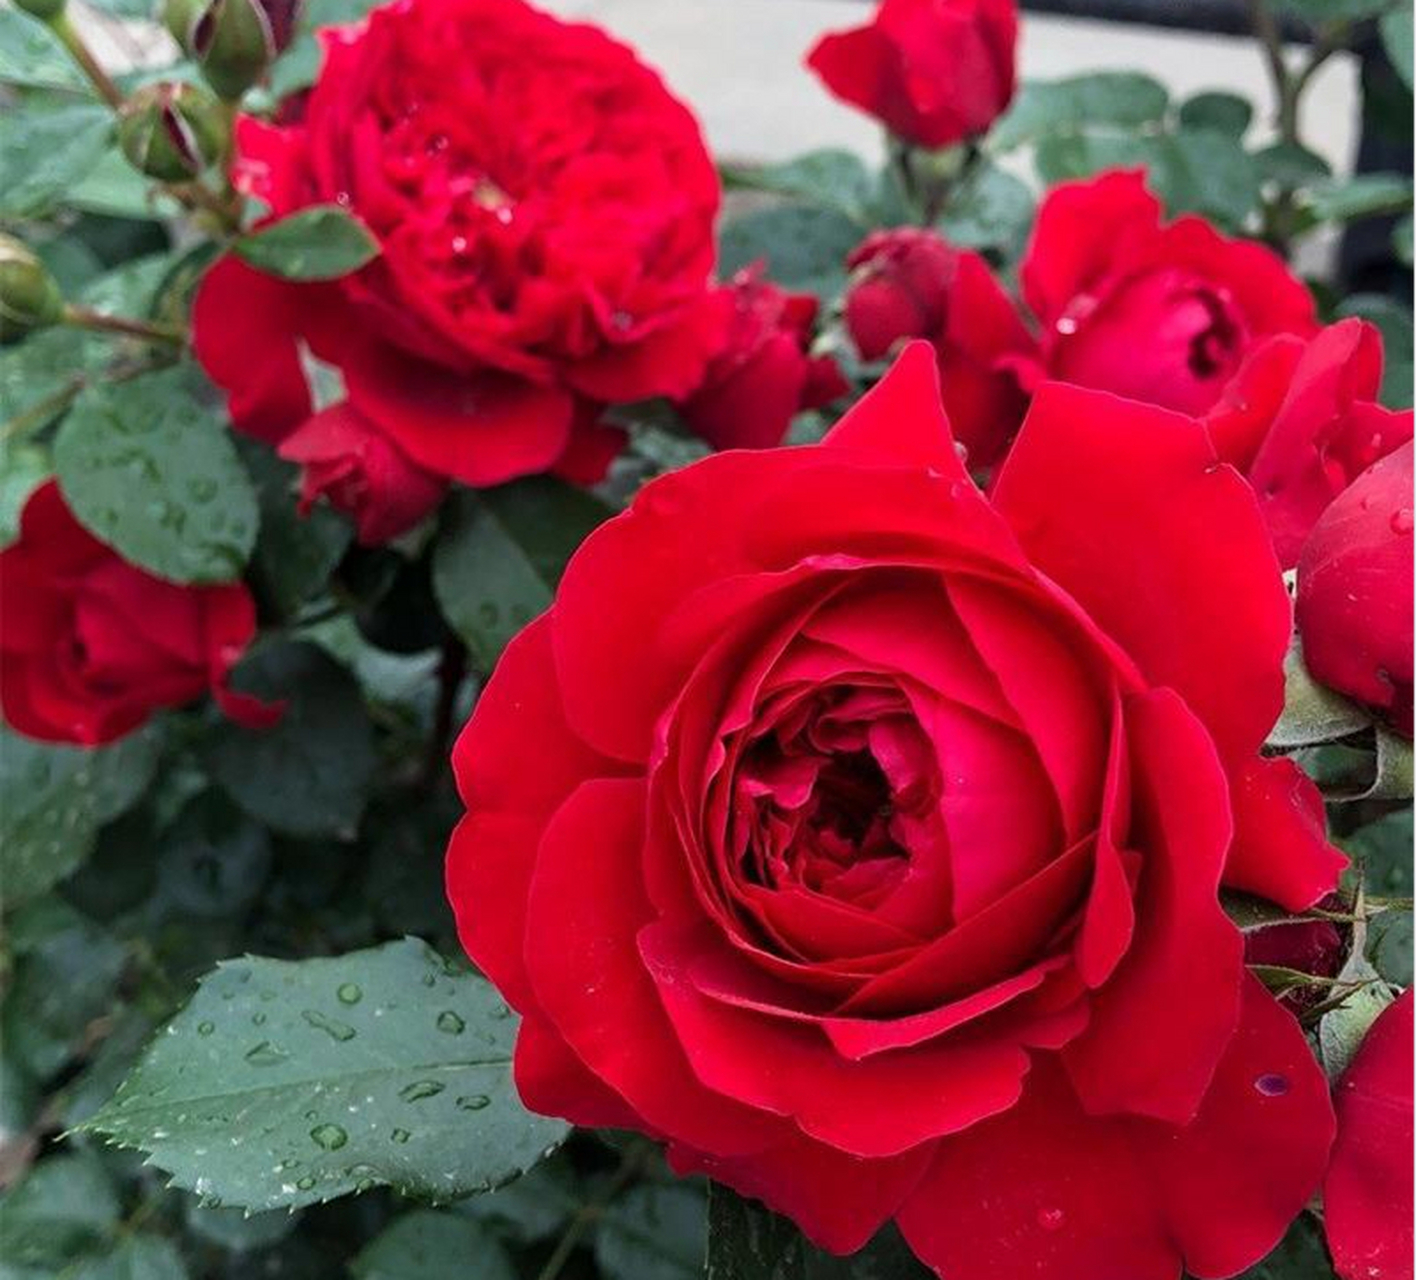 蒂娜月季是玫瑰家族的一员,以其独特的美丽和持久的芬芳受到全球花卉